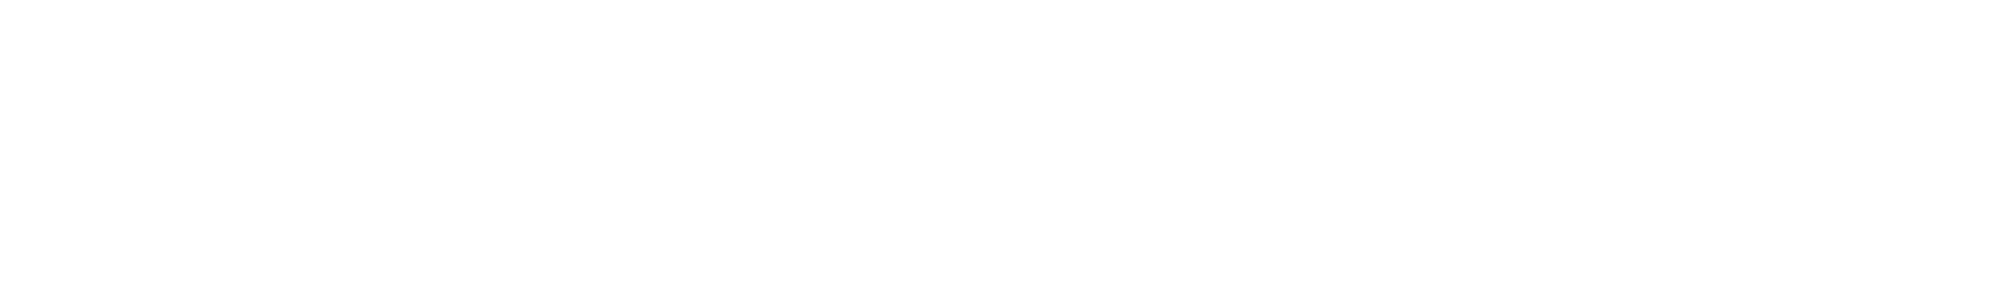 Innovation News Hub